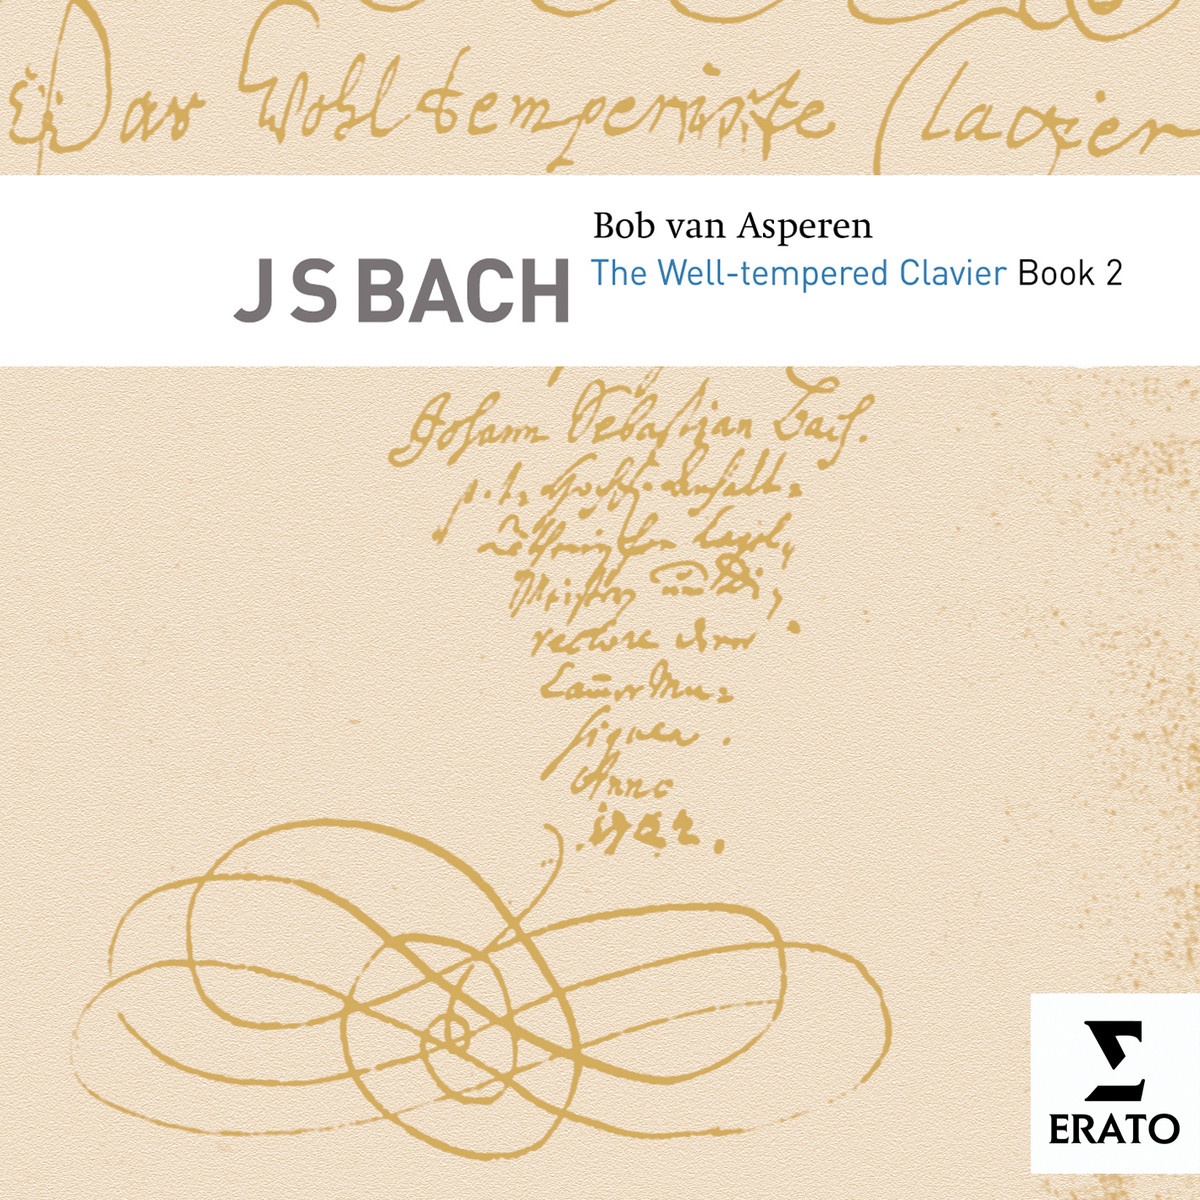 Das wohltemperierte Klavier Book Two BWV 870-893, Book Two, No. 8 in E flat minor BWV 877: Fugue